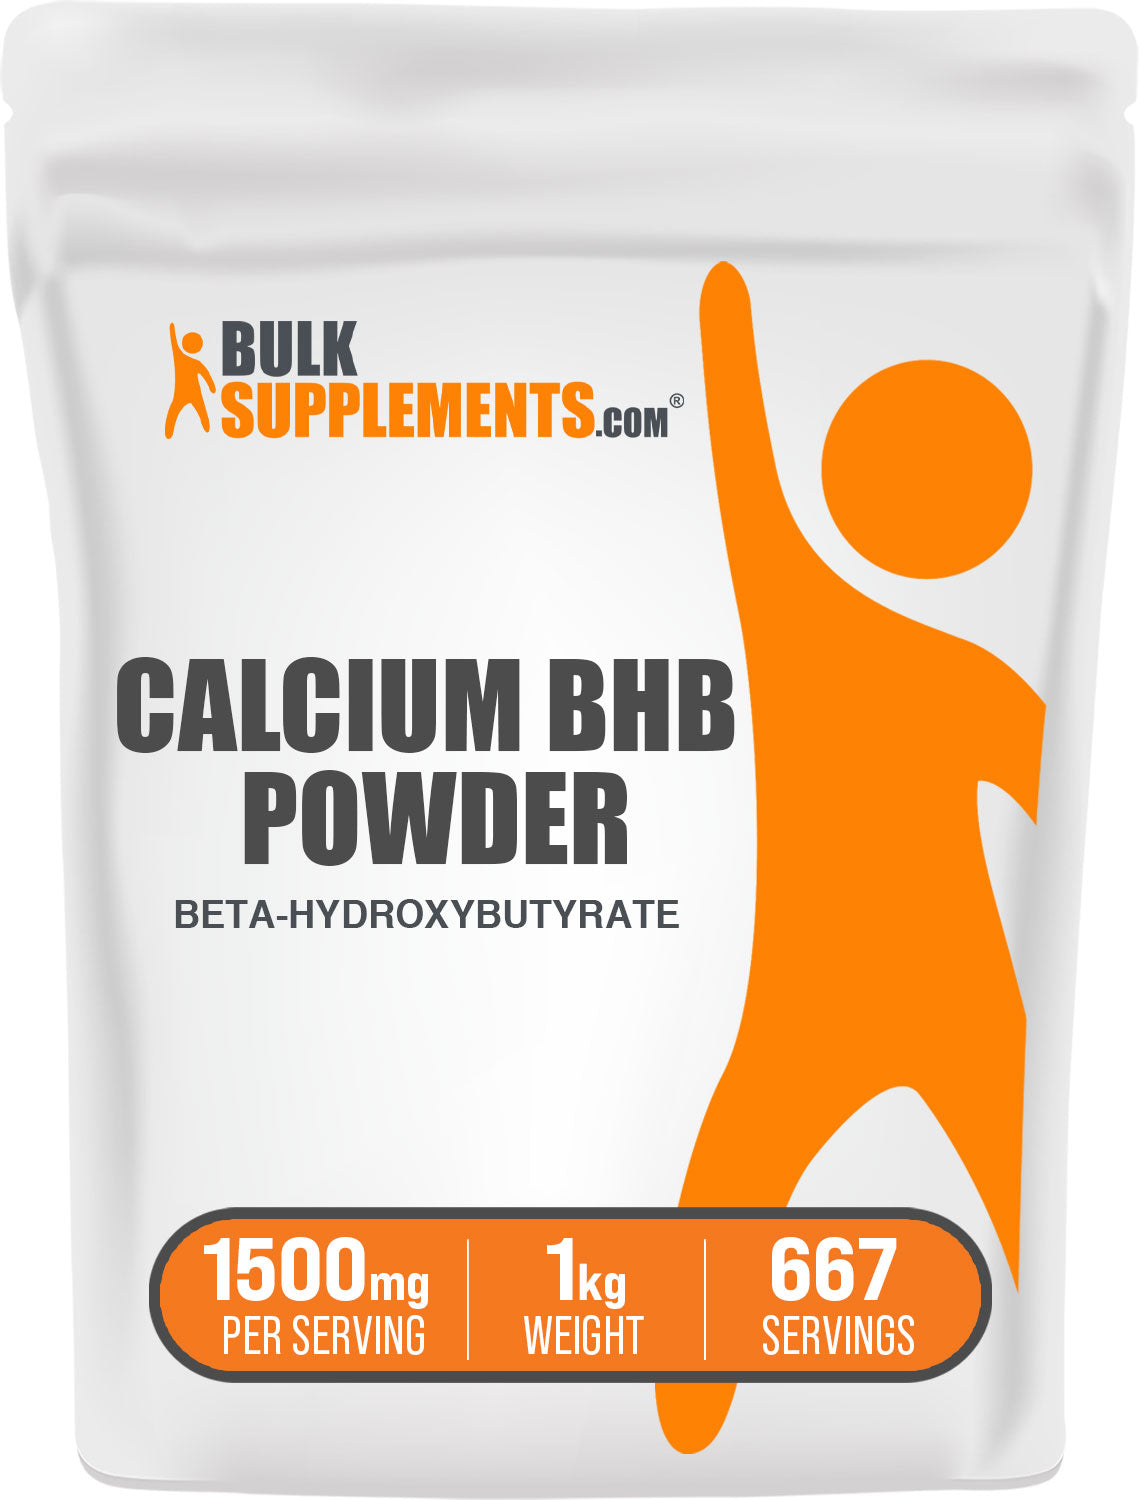 1kg calcium bhb